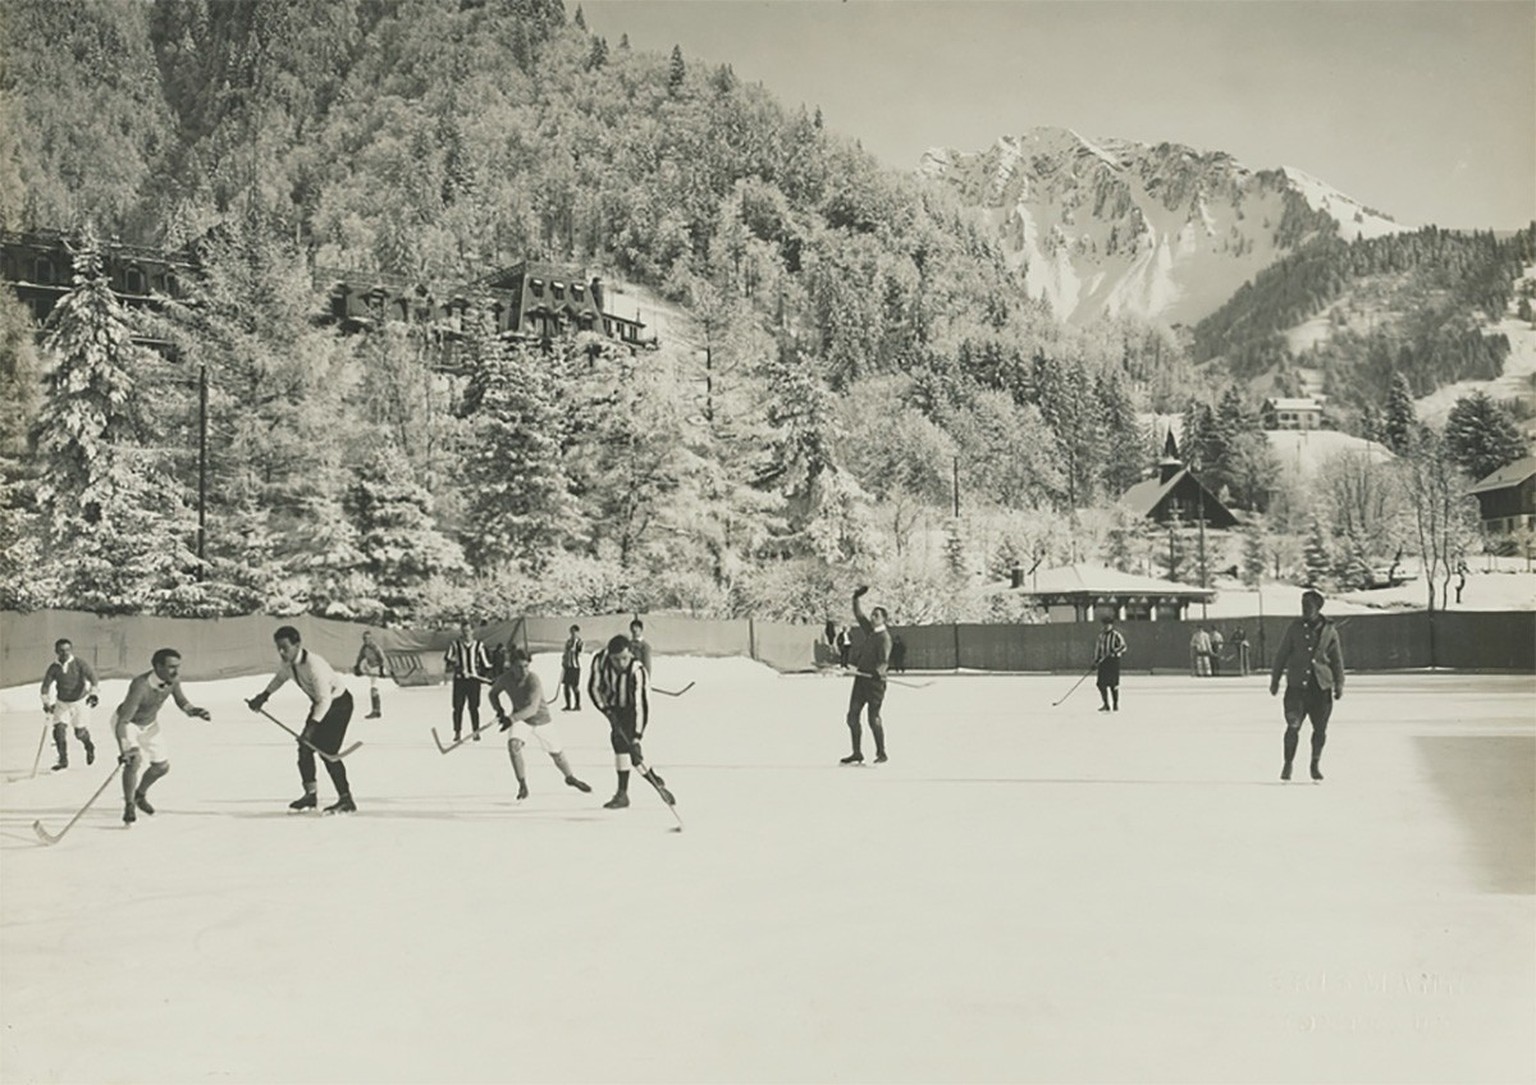 Match de hockey sur glace tout en élégance au Grand Hôtel des Avants, dans les années 1920.
http://doi.org/10.3932/ethz-a-000102587